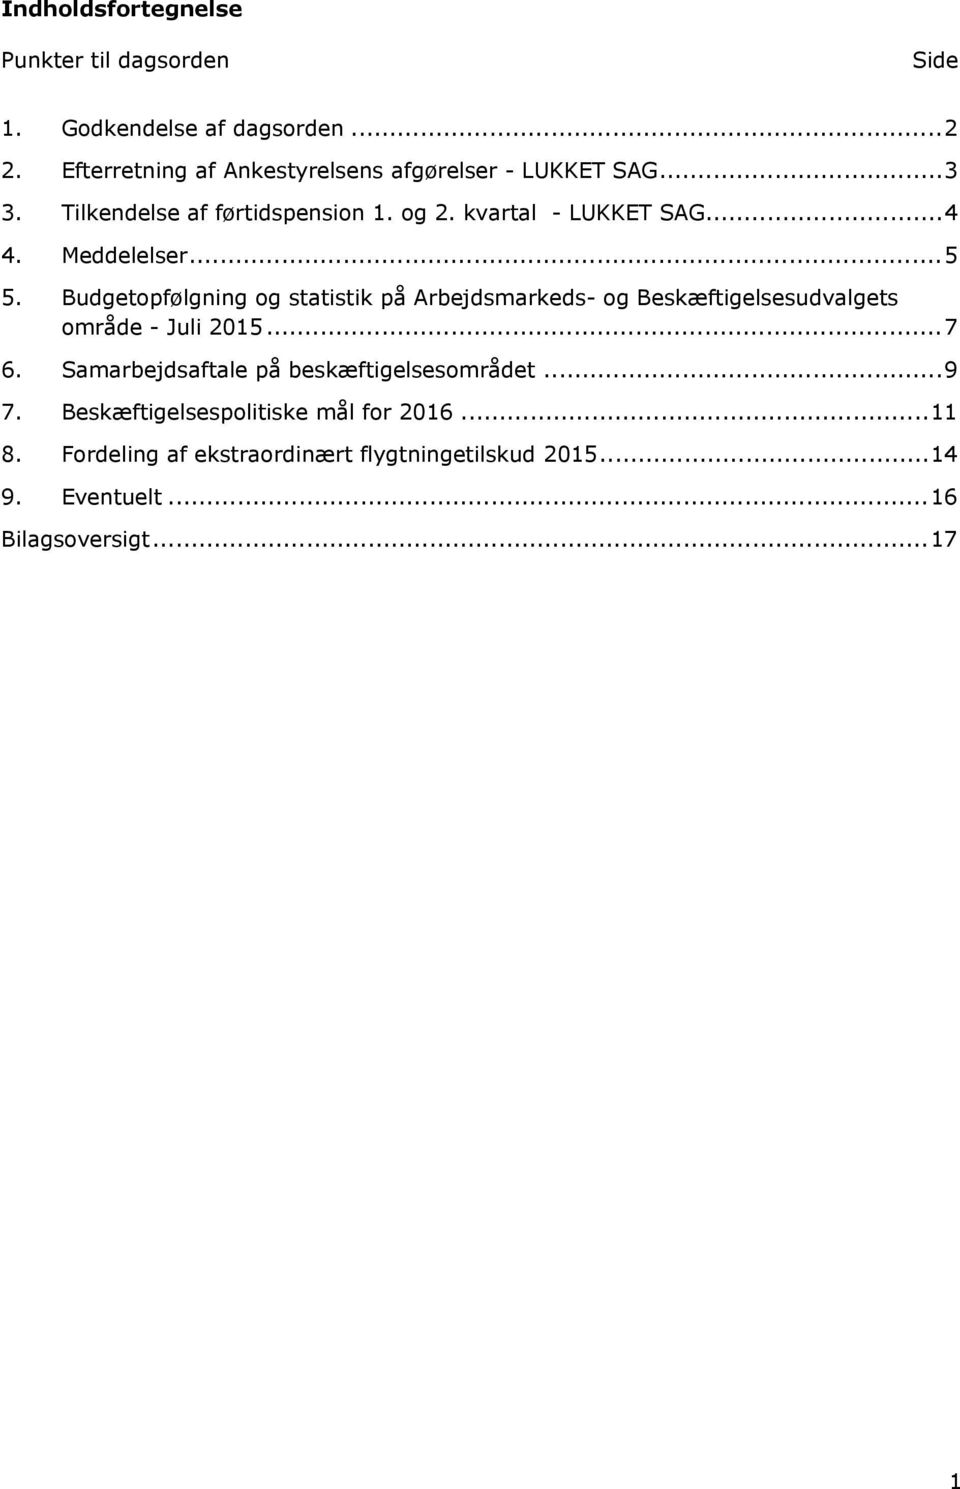 Meddelelser...5 5. Budgetopfølgning og statistik på Arbejdsmarkeds- og Beskæftigelsesudvalgets område - Juli 2015...7 6.